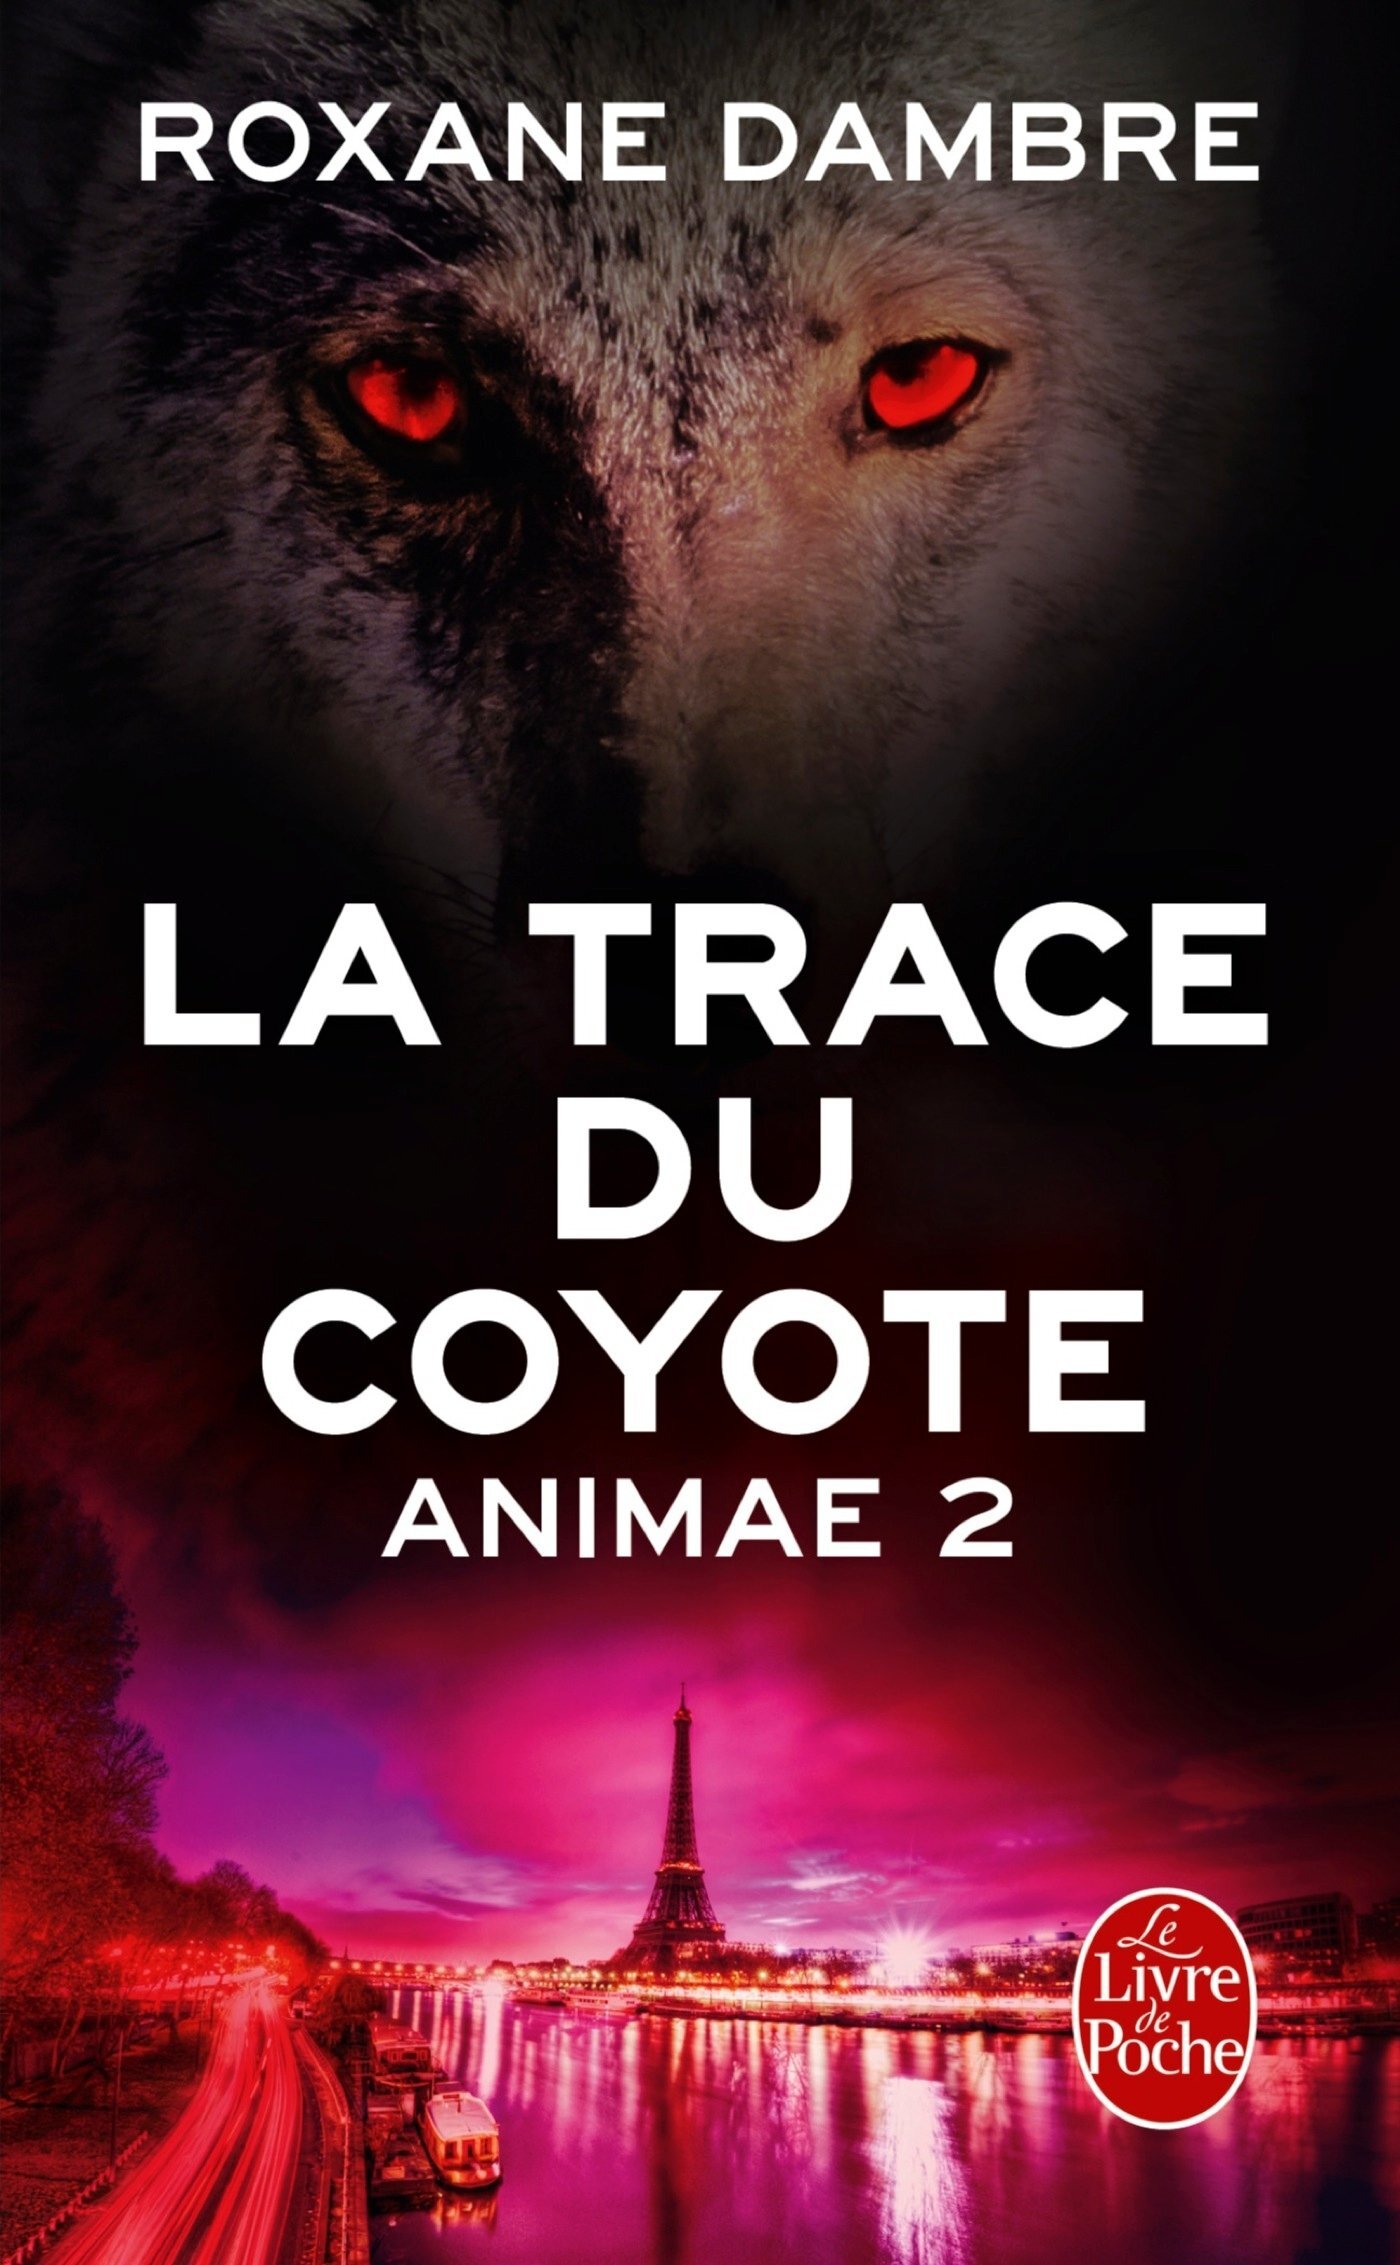 <a href="/node/32399">La trace du coyote</a>